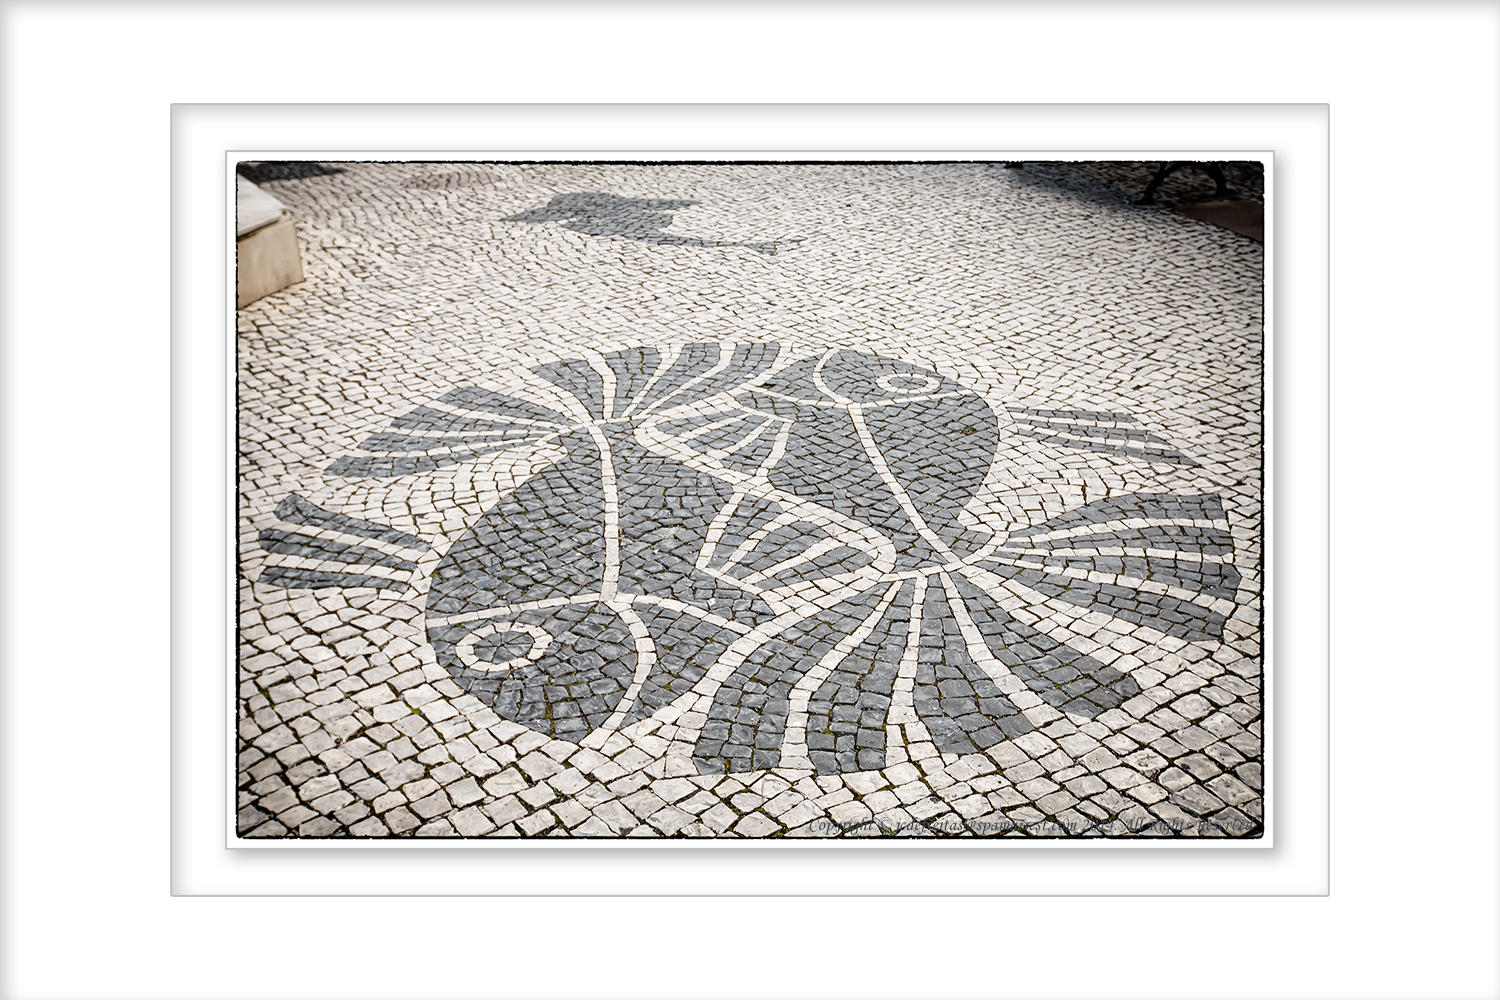 2014 - Calçada Portuguesa (cobblestones) - Lagos, Algarve - Portugal